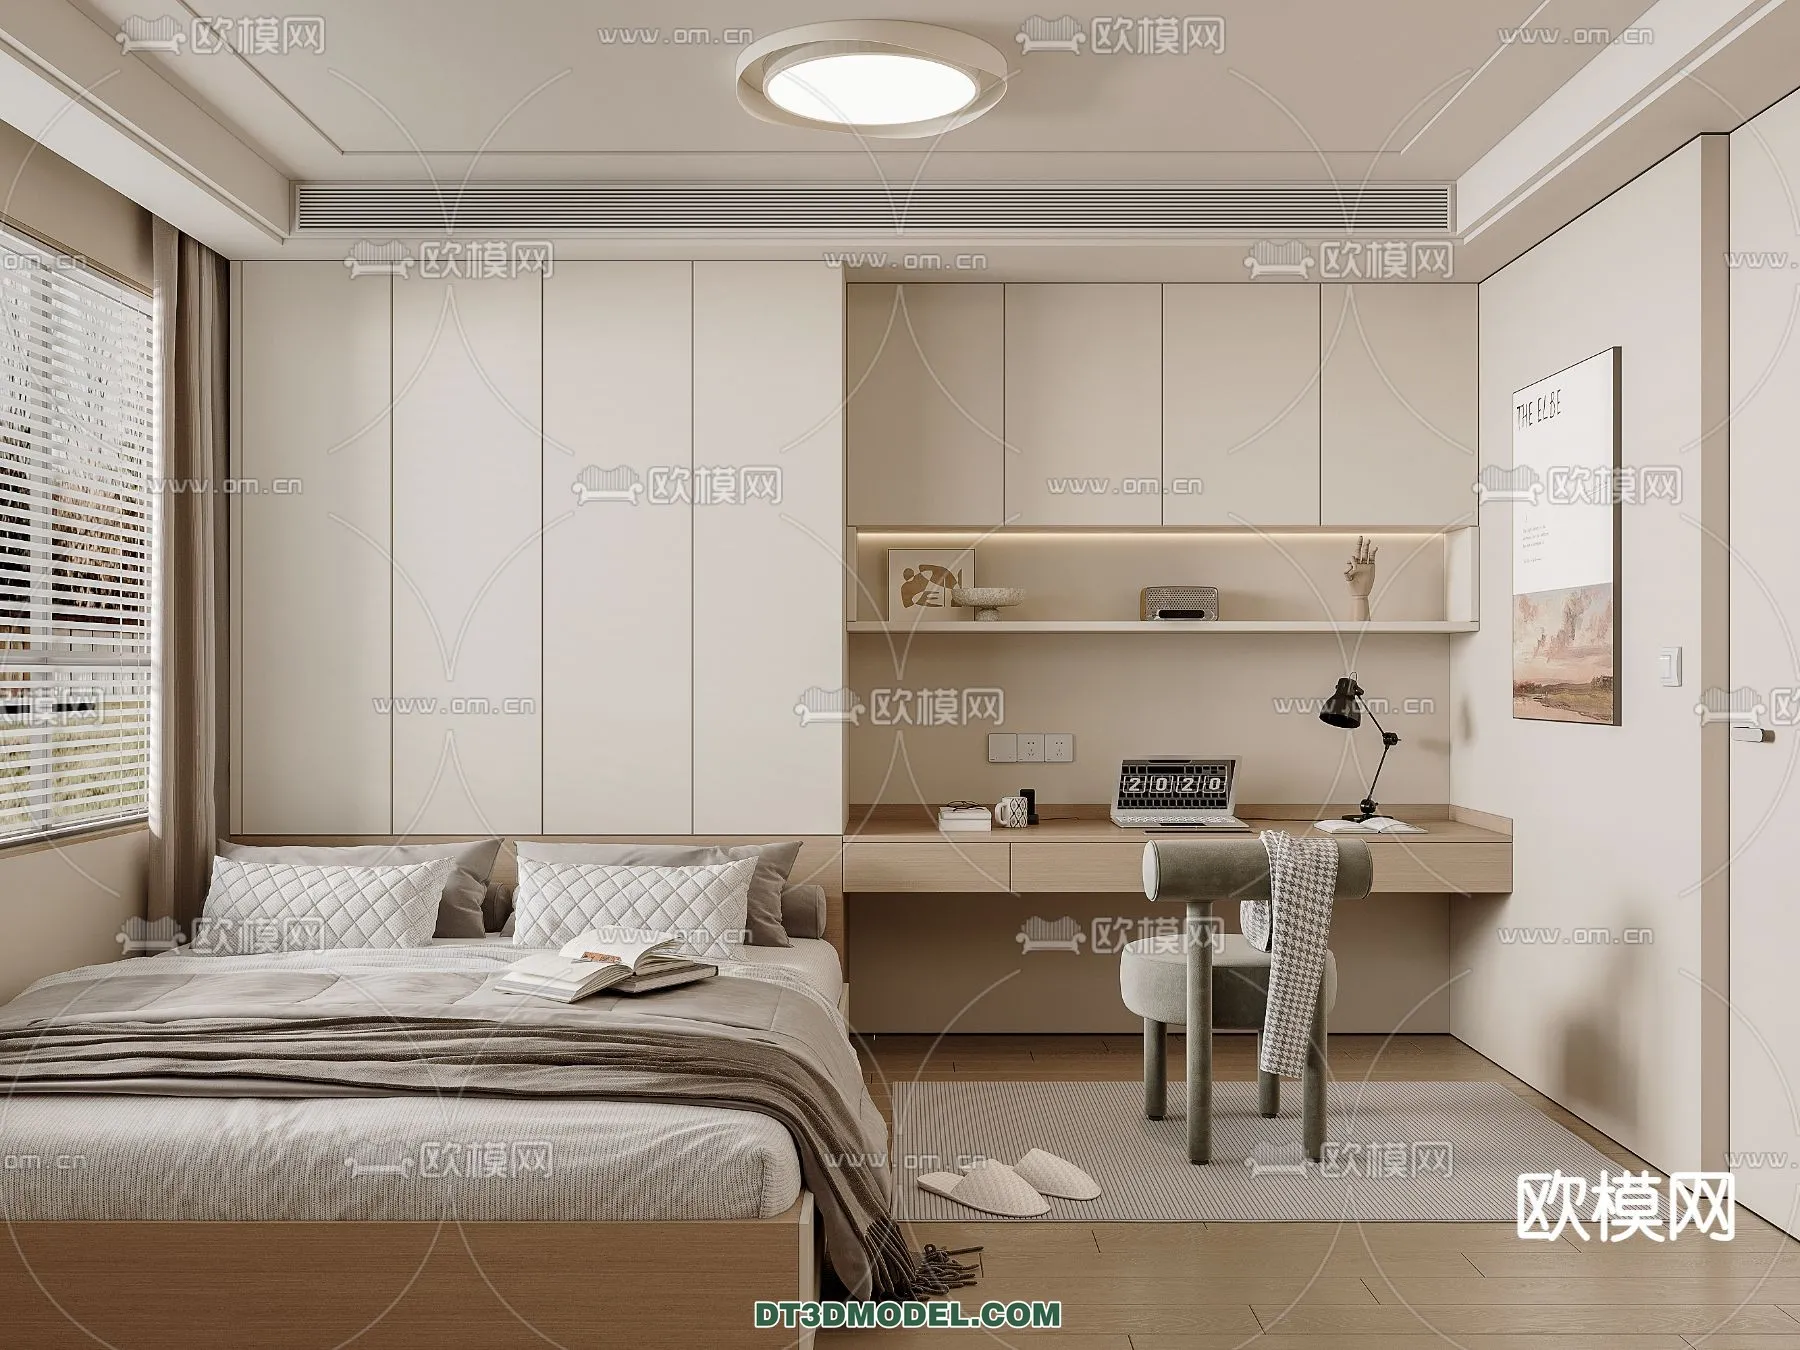 Tatami Bedroom – Japan Bedroom – 3D Scene – 049